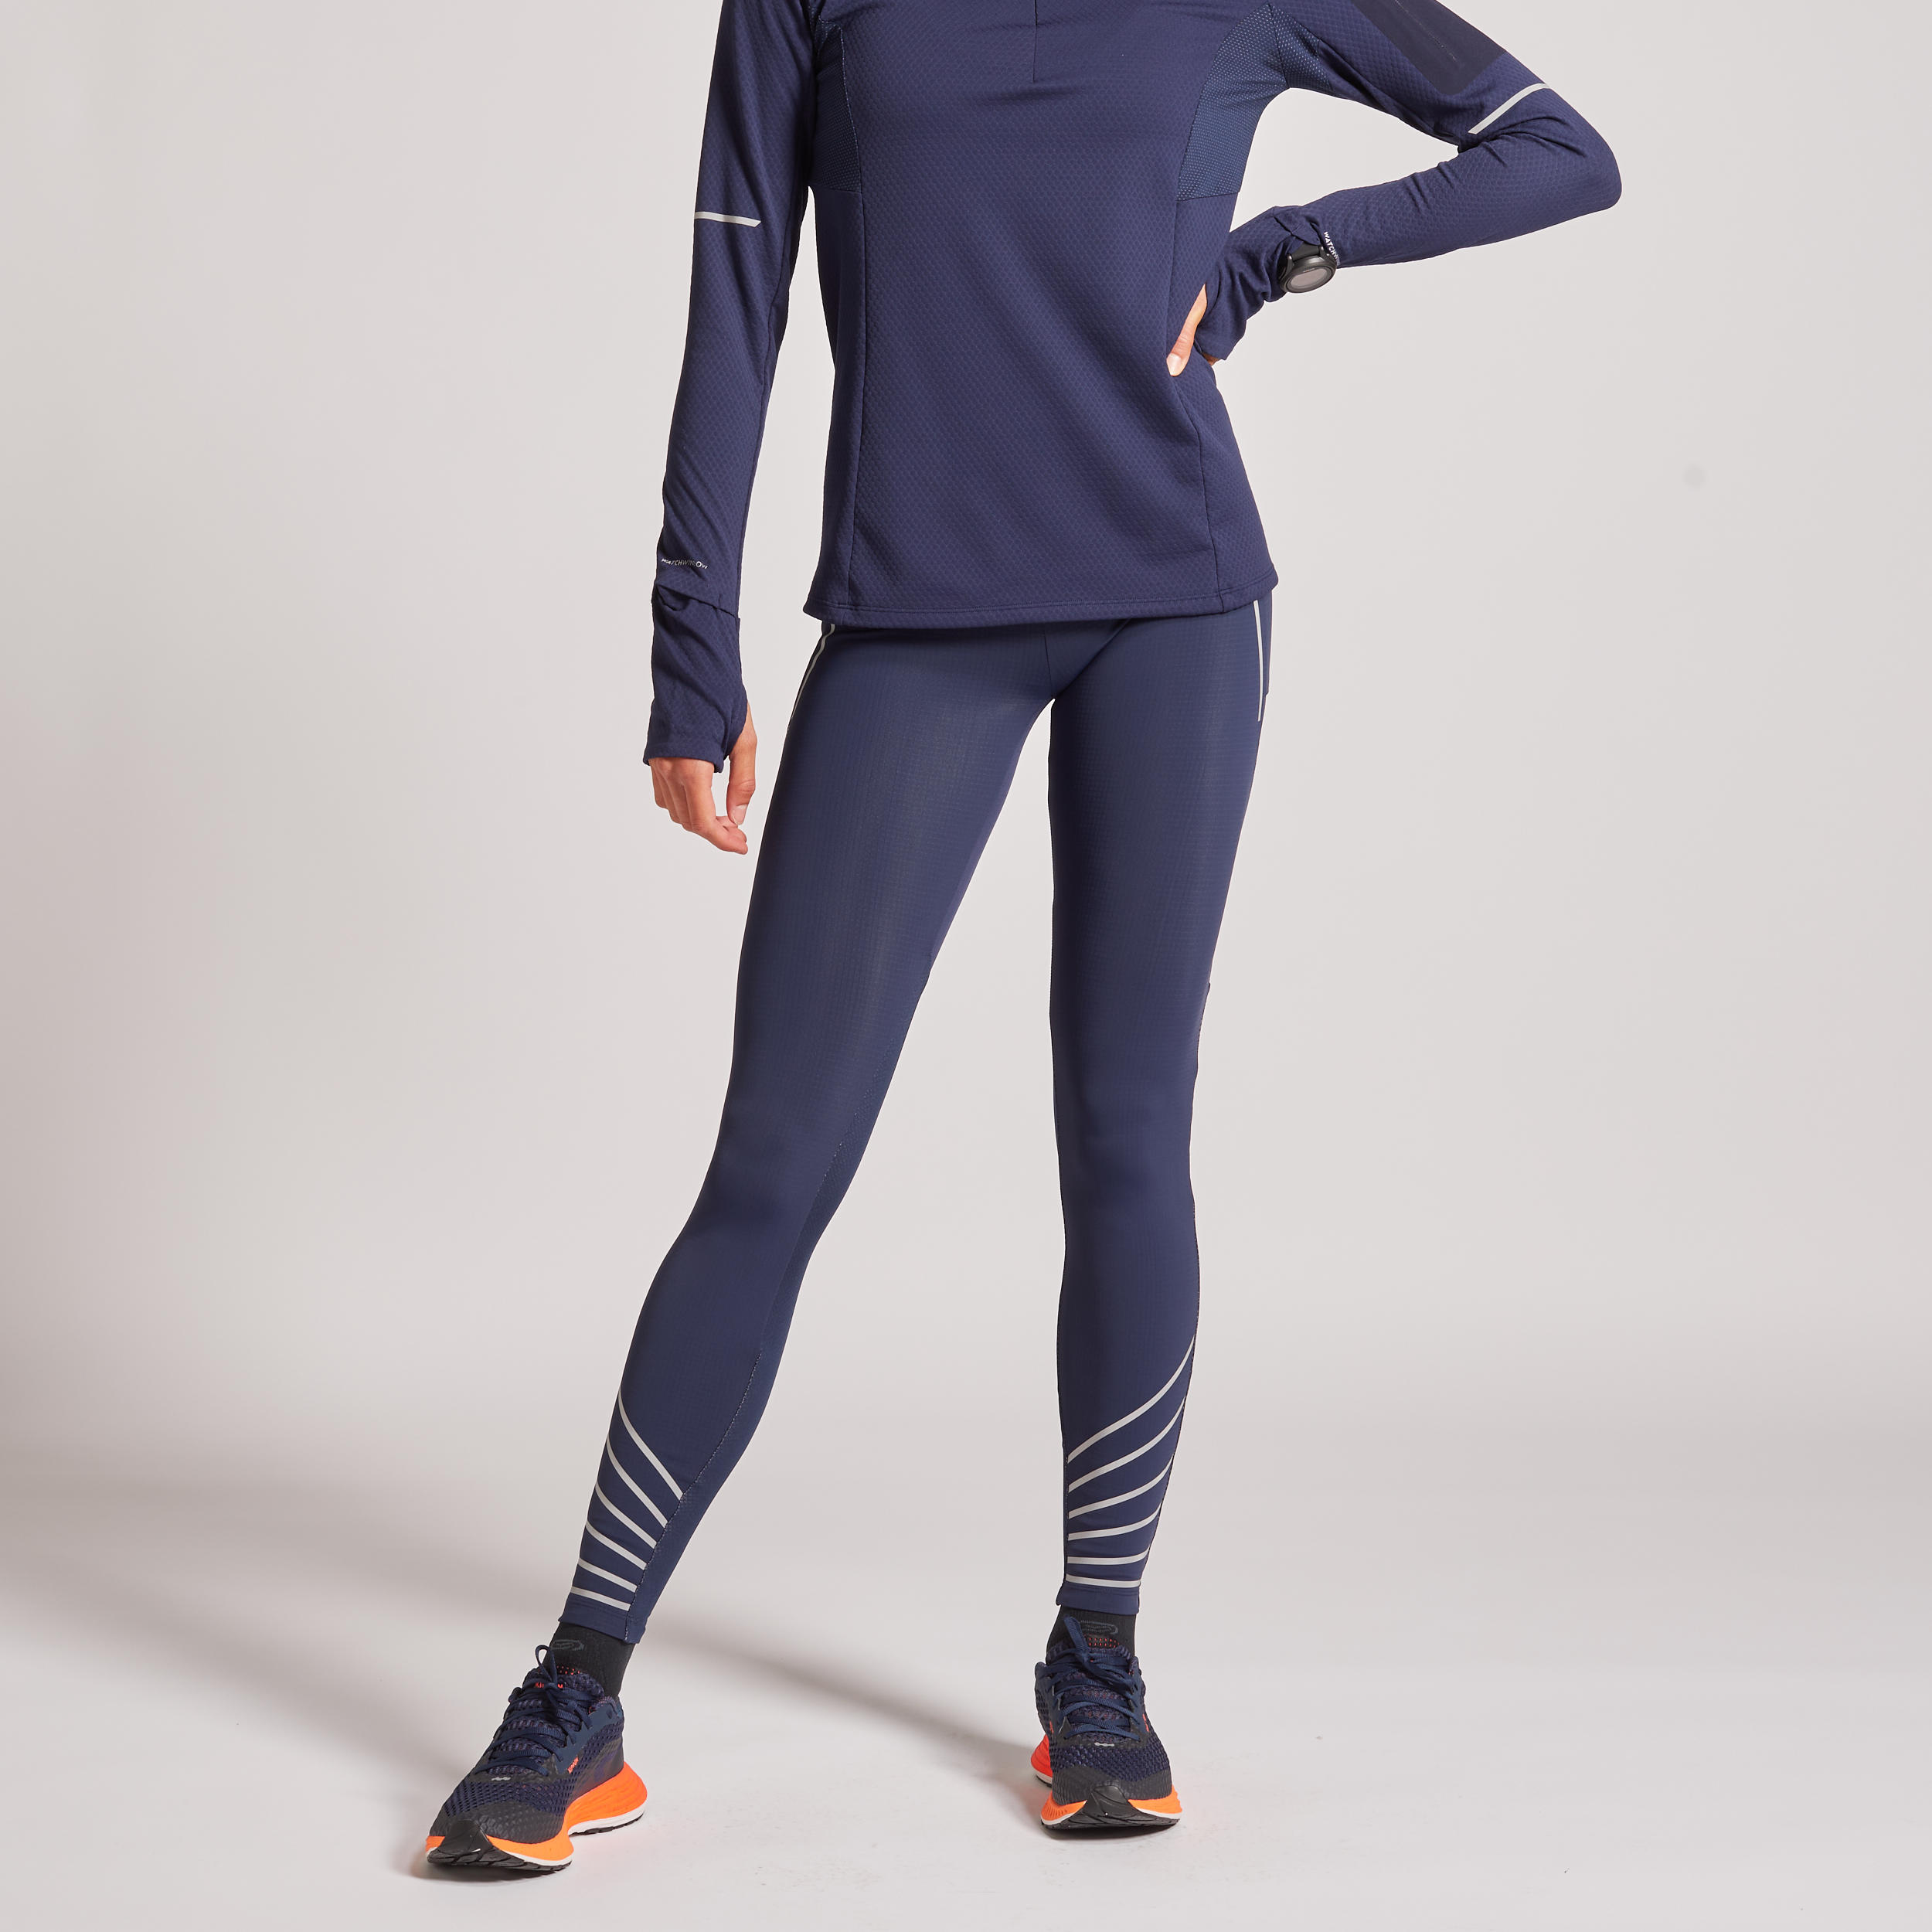 ASICS Lite-Show running leggings for women